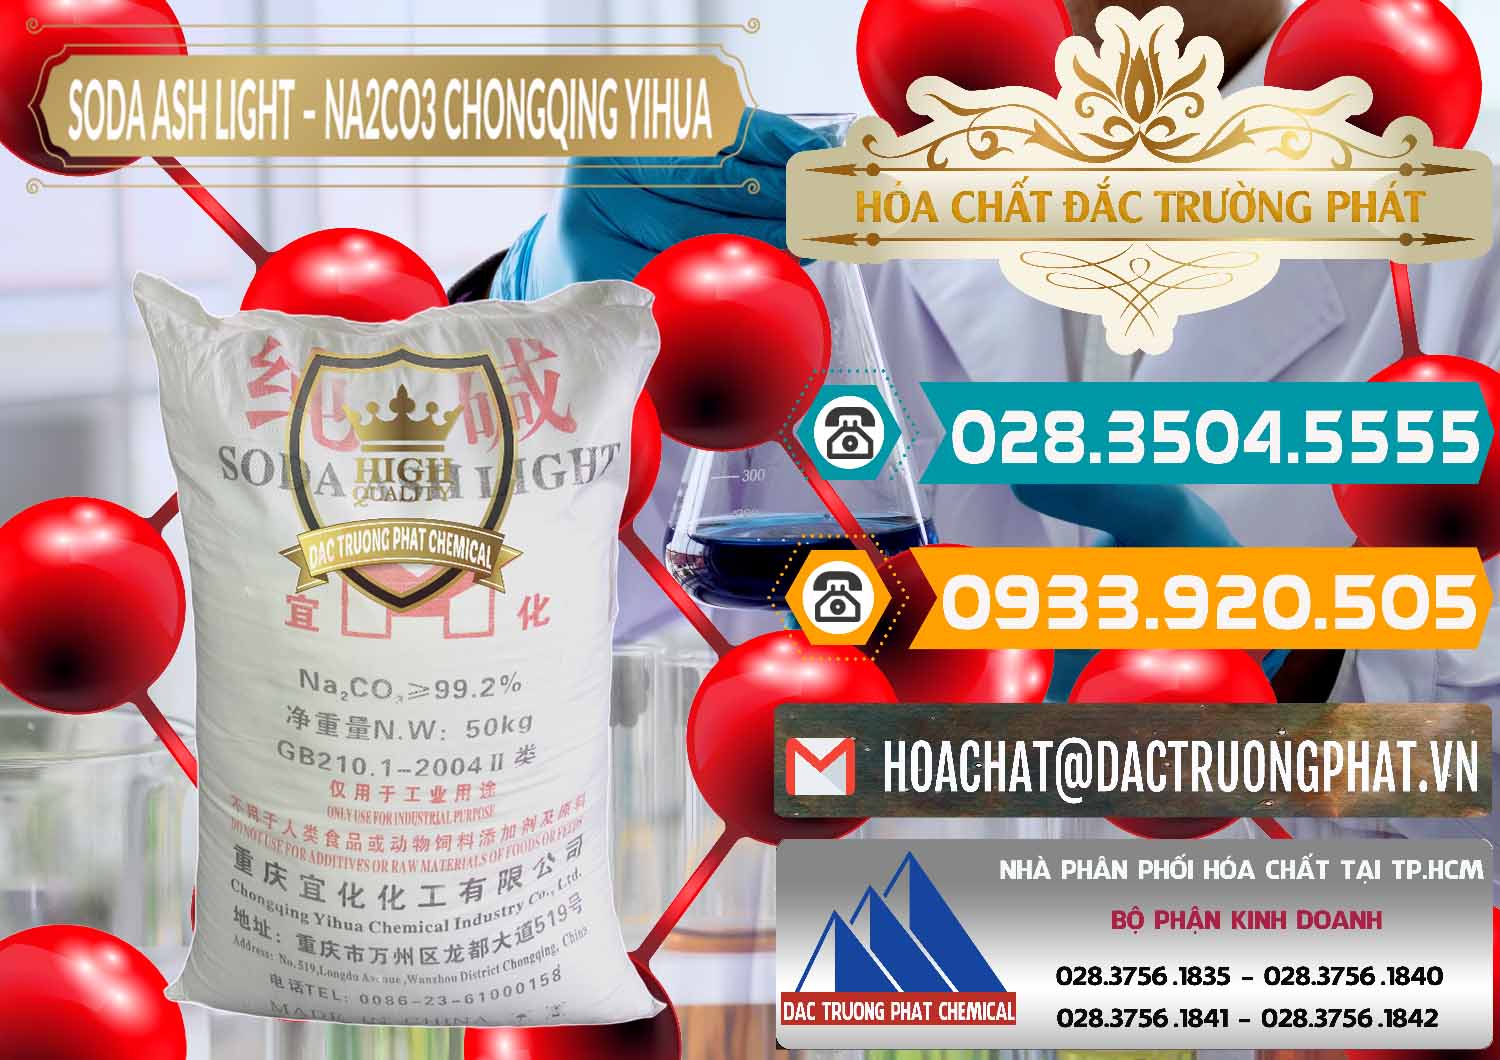 Nơi chuyên phân phối ( bán ) Soda Ash Light - NA2CO3 Chongqing Yihua Trung Quốc China - 0129 - Công ty chuyên kinh doanh & cung cấp hóa chất tại TP.HCM - congtyhoachat.vn